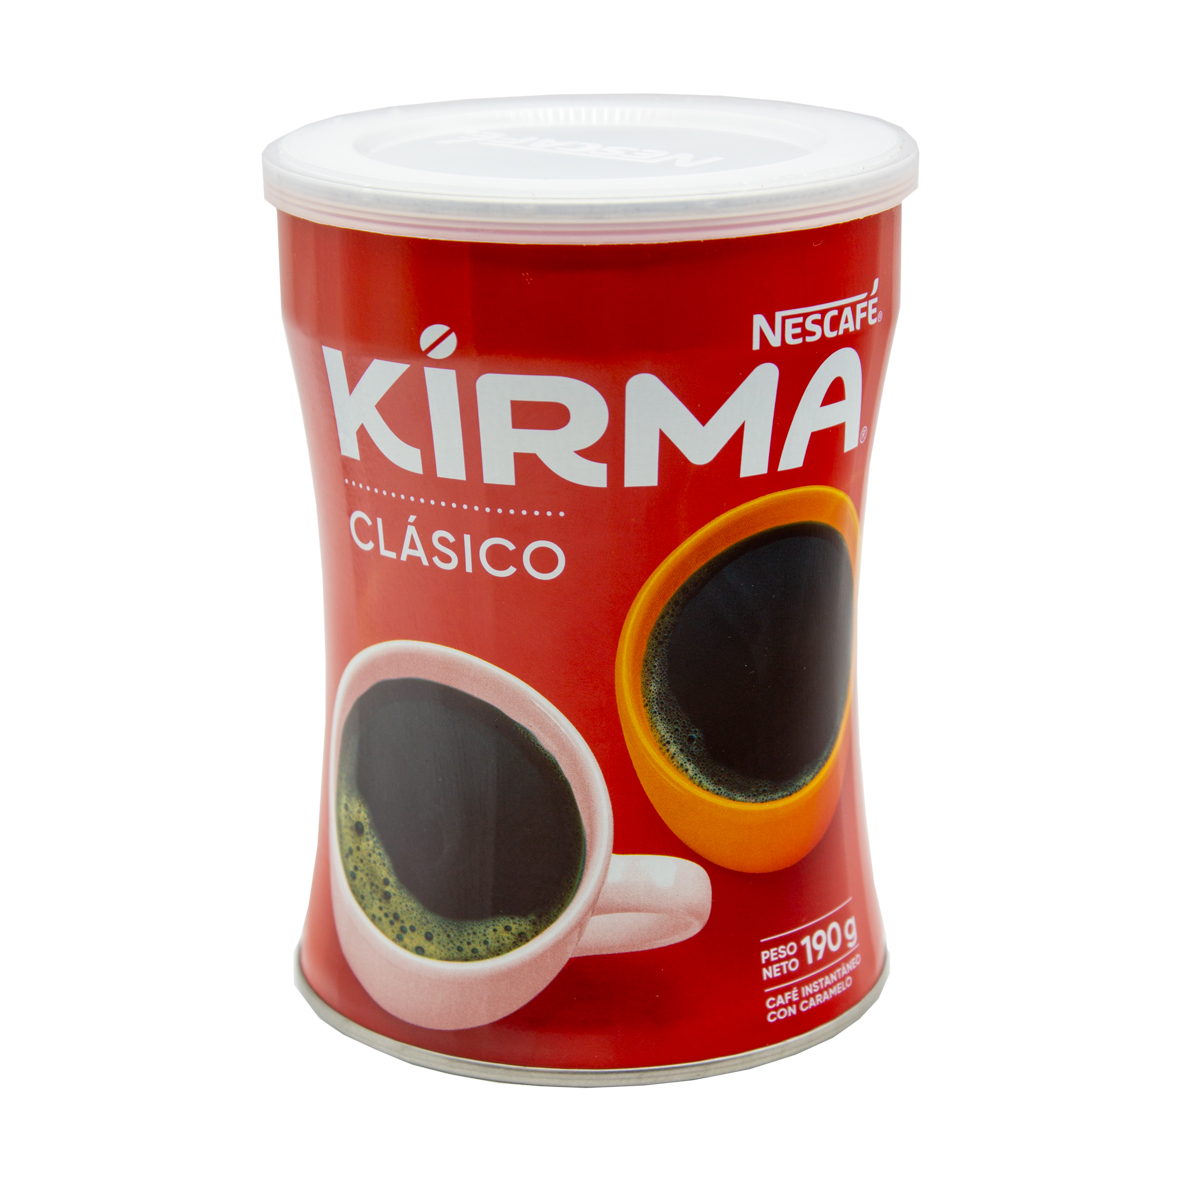 KIRMA INSTANT COFFEE 190G X 12